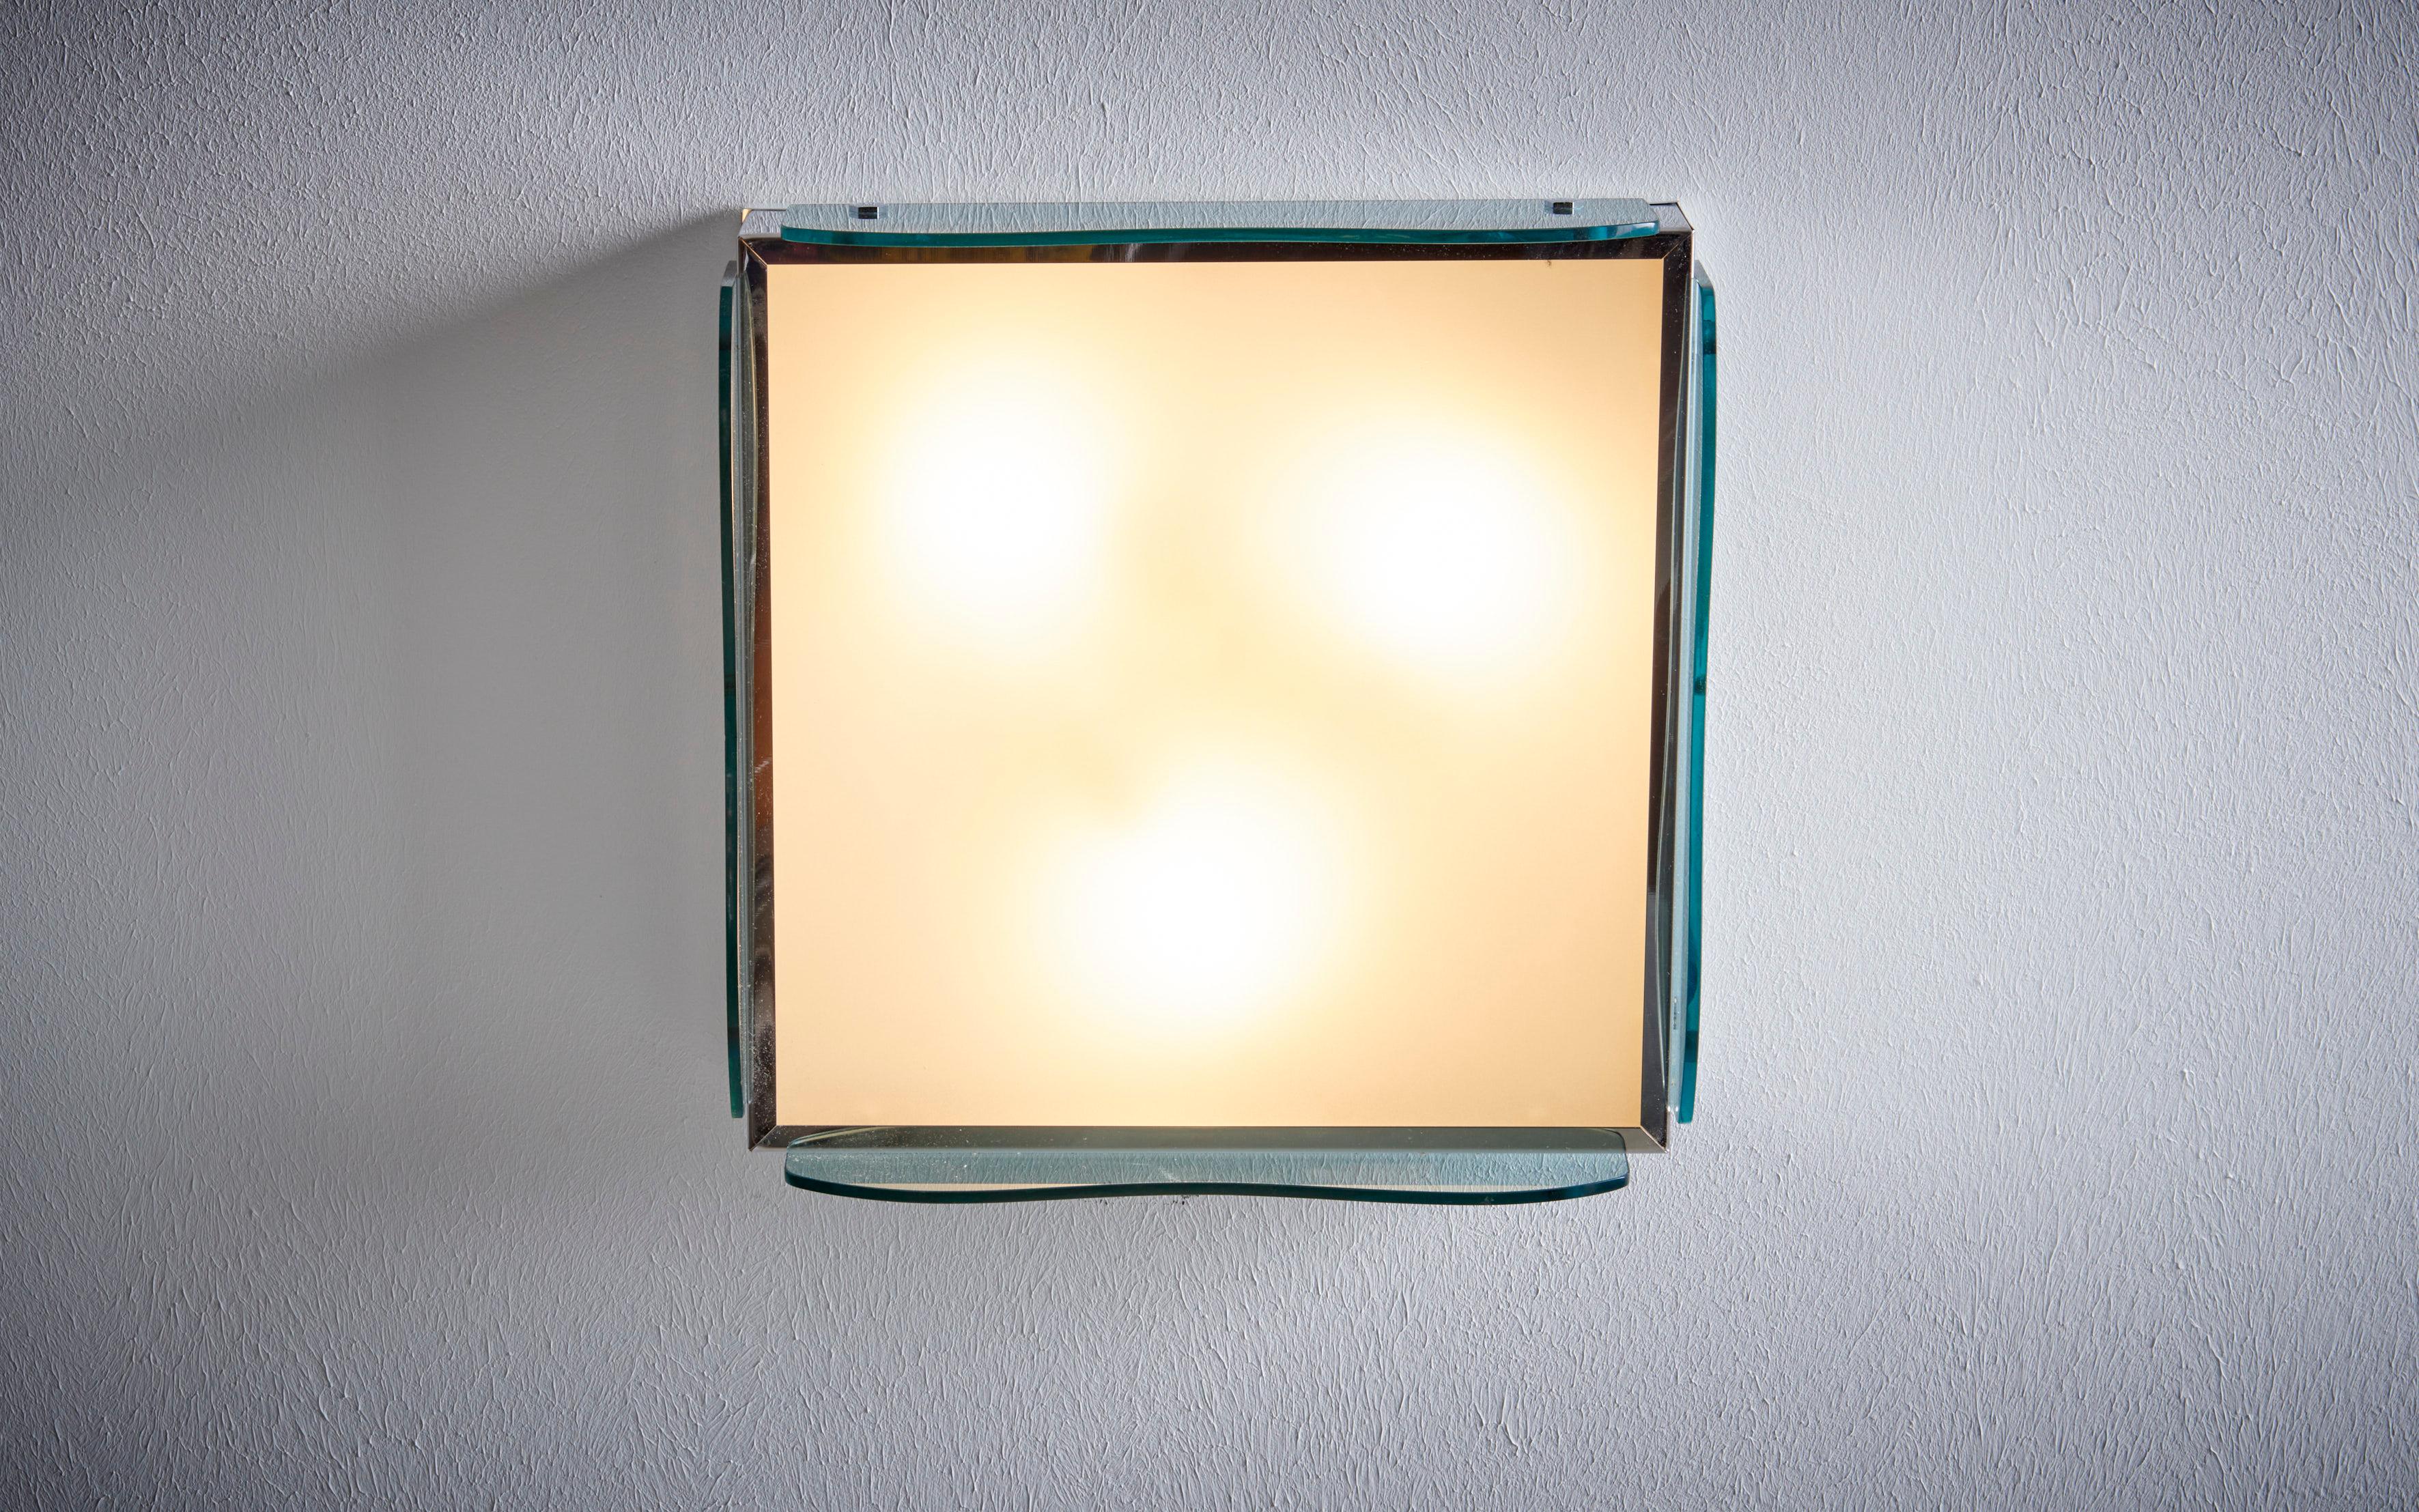 1960er Jahre Design Italienische Wandlampe nos in getöntem grünem Glas. Der Preis gilt pro Stück. Die gleiche Unterputzleuchte ist auch in blau getöntem Glas und in Klarglas erhältlich. Bitte prüfen Sie unsere anderen Angebote auf Verfügbarkeit 